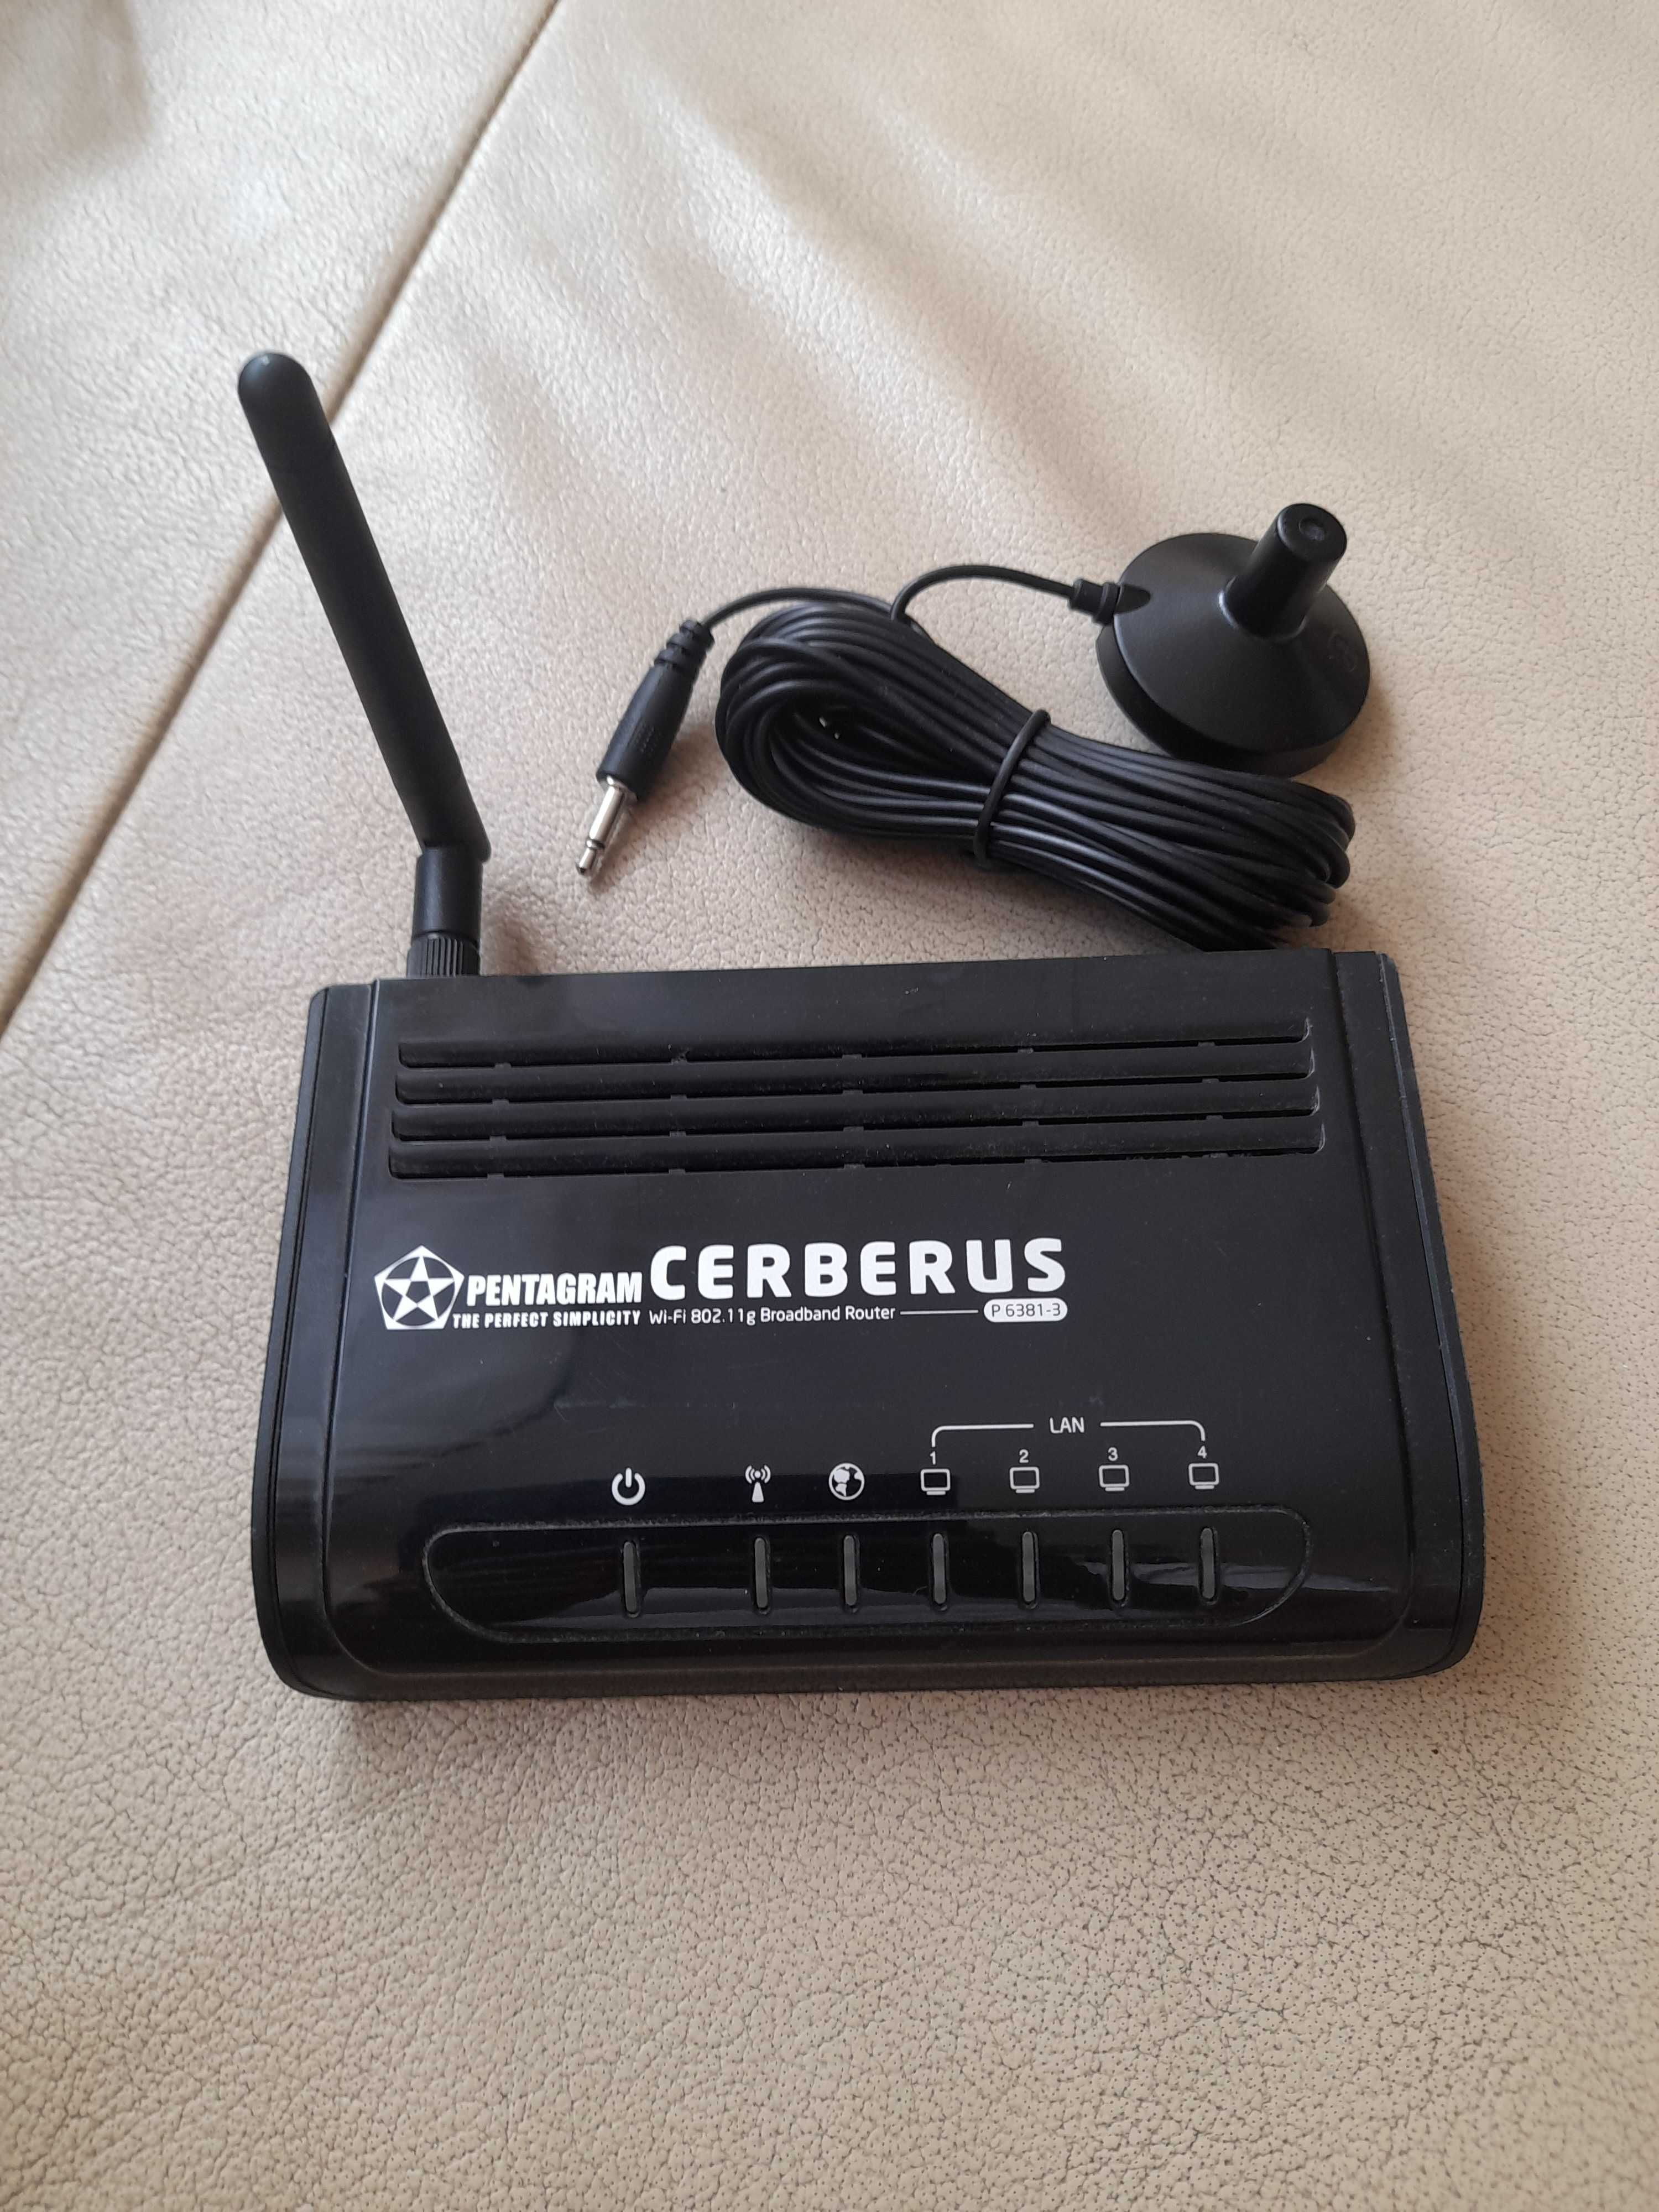 Router Cerberus P 6381-3